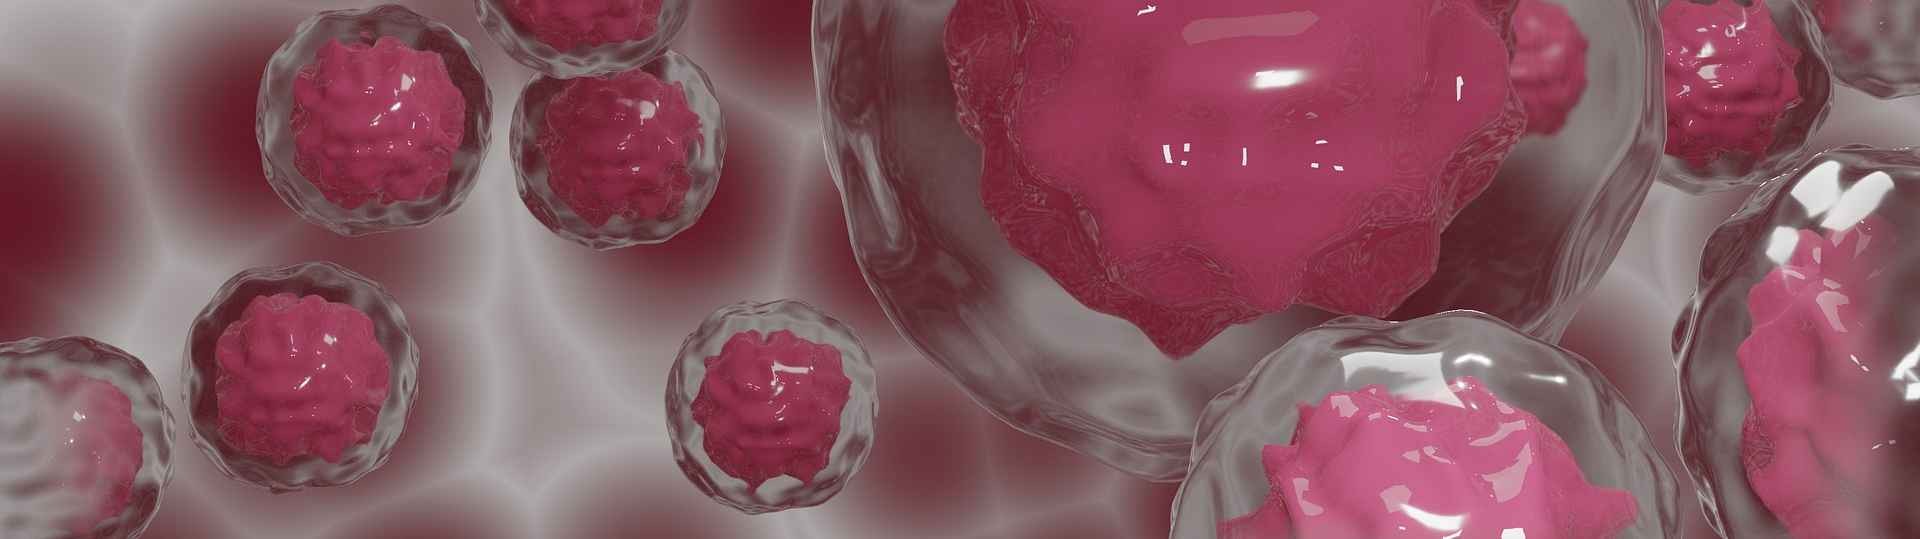 Descubierto el primer anticuerpo que ataca las células madre del cáncer